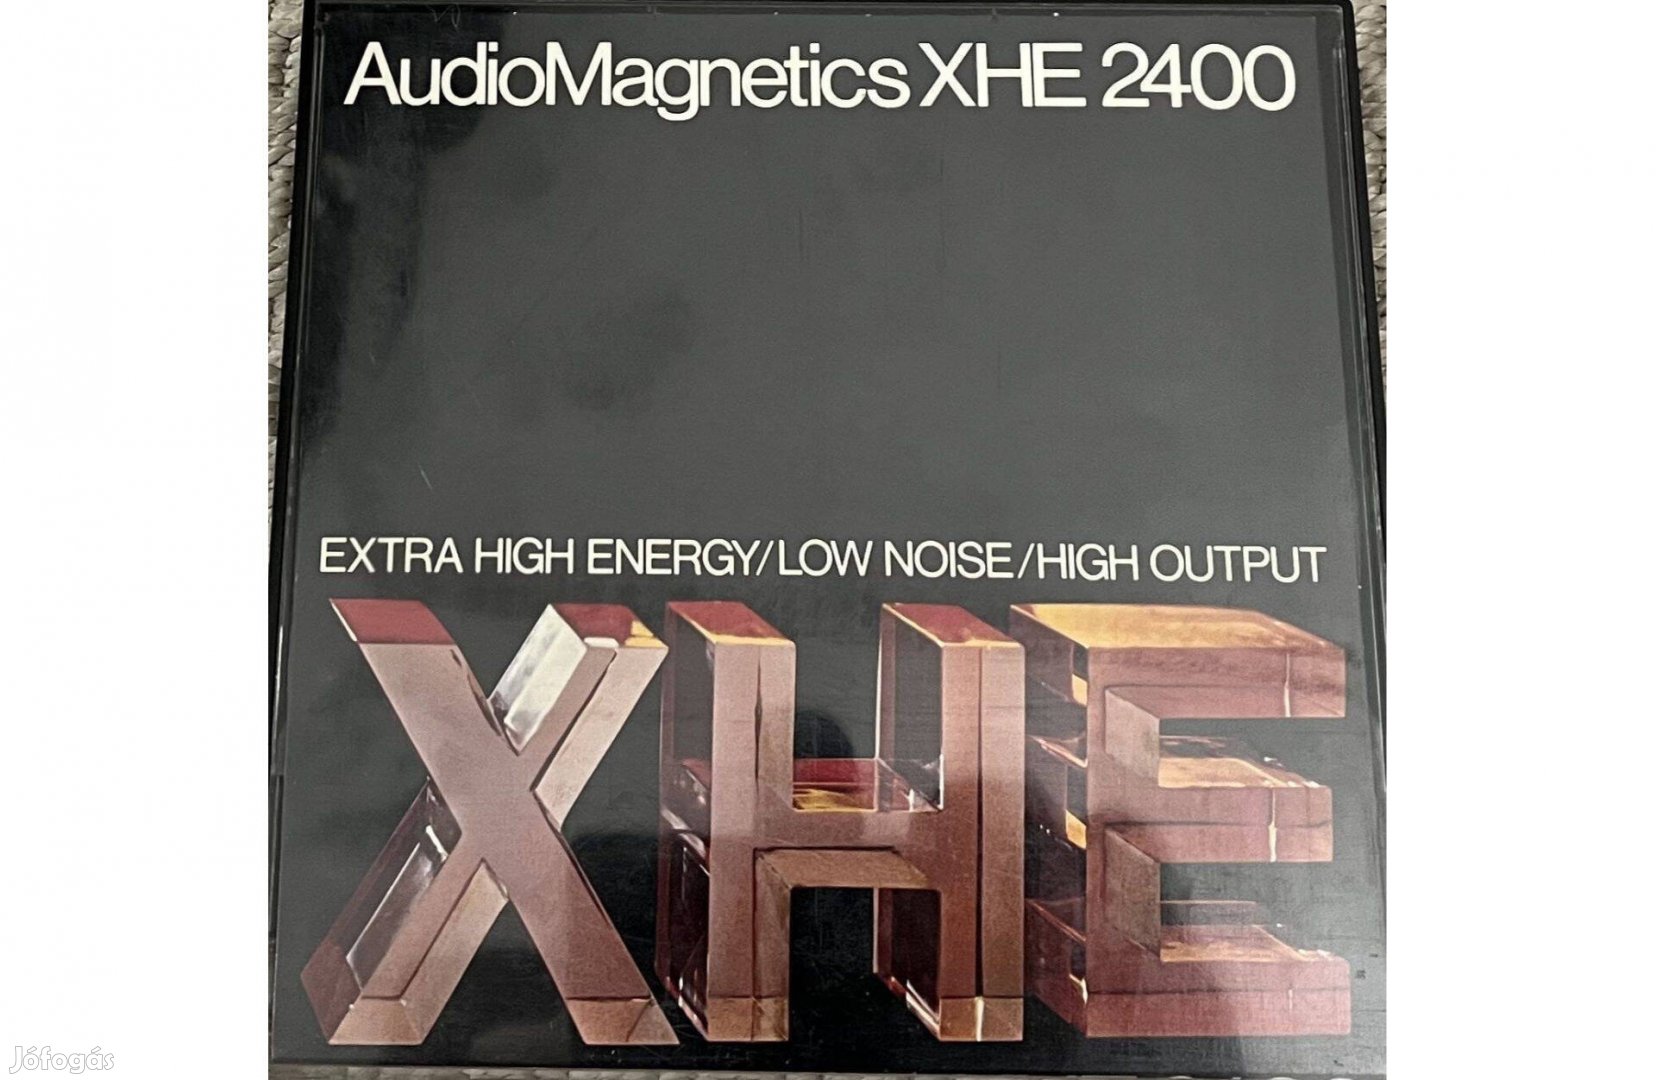 Audiomagnetics Xhe 2400 magnószalag magnetofon orsós szalag